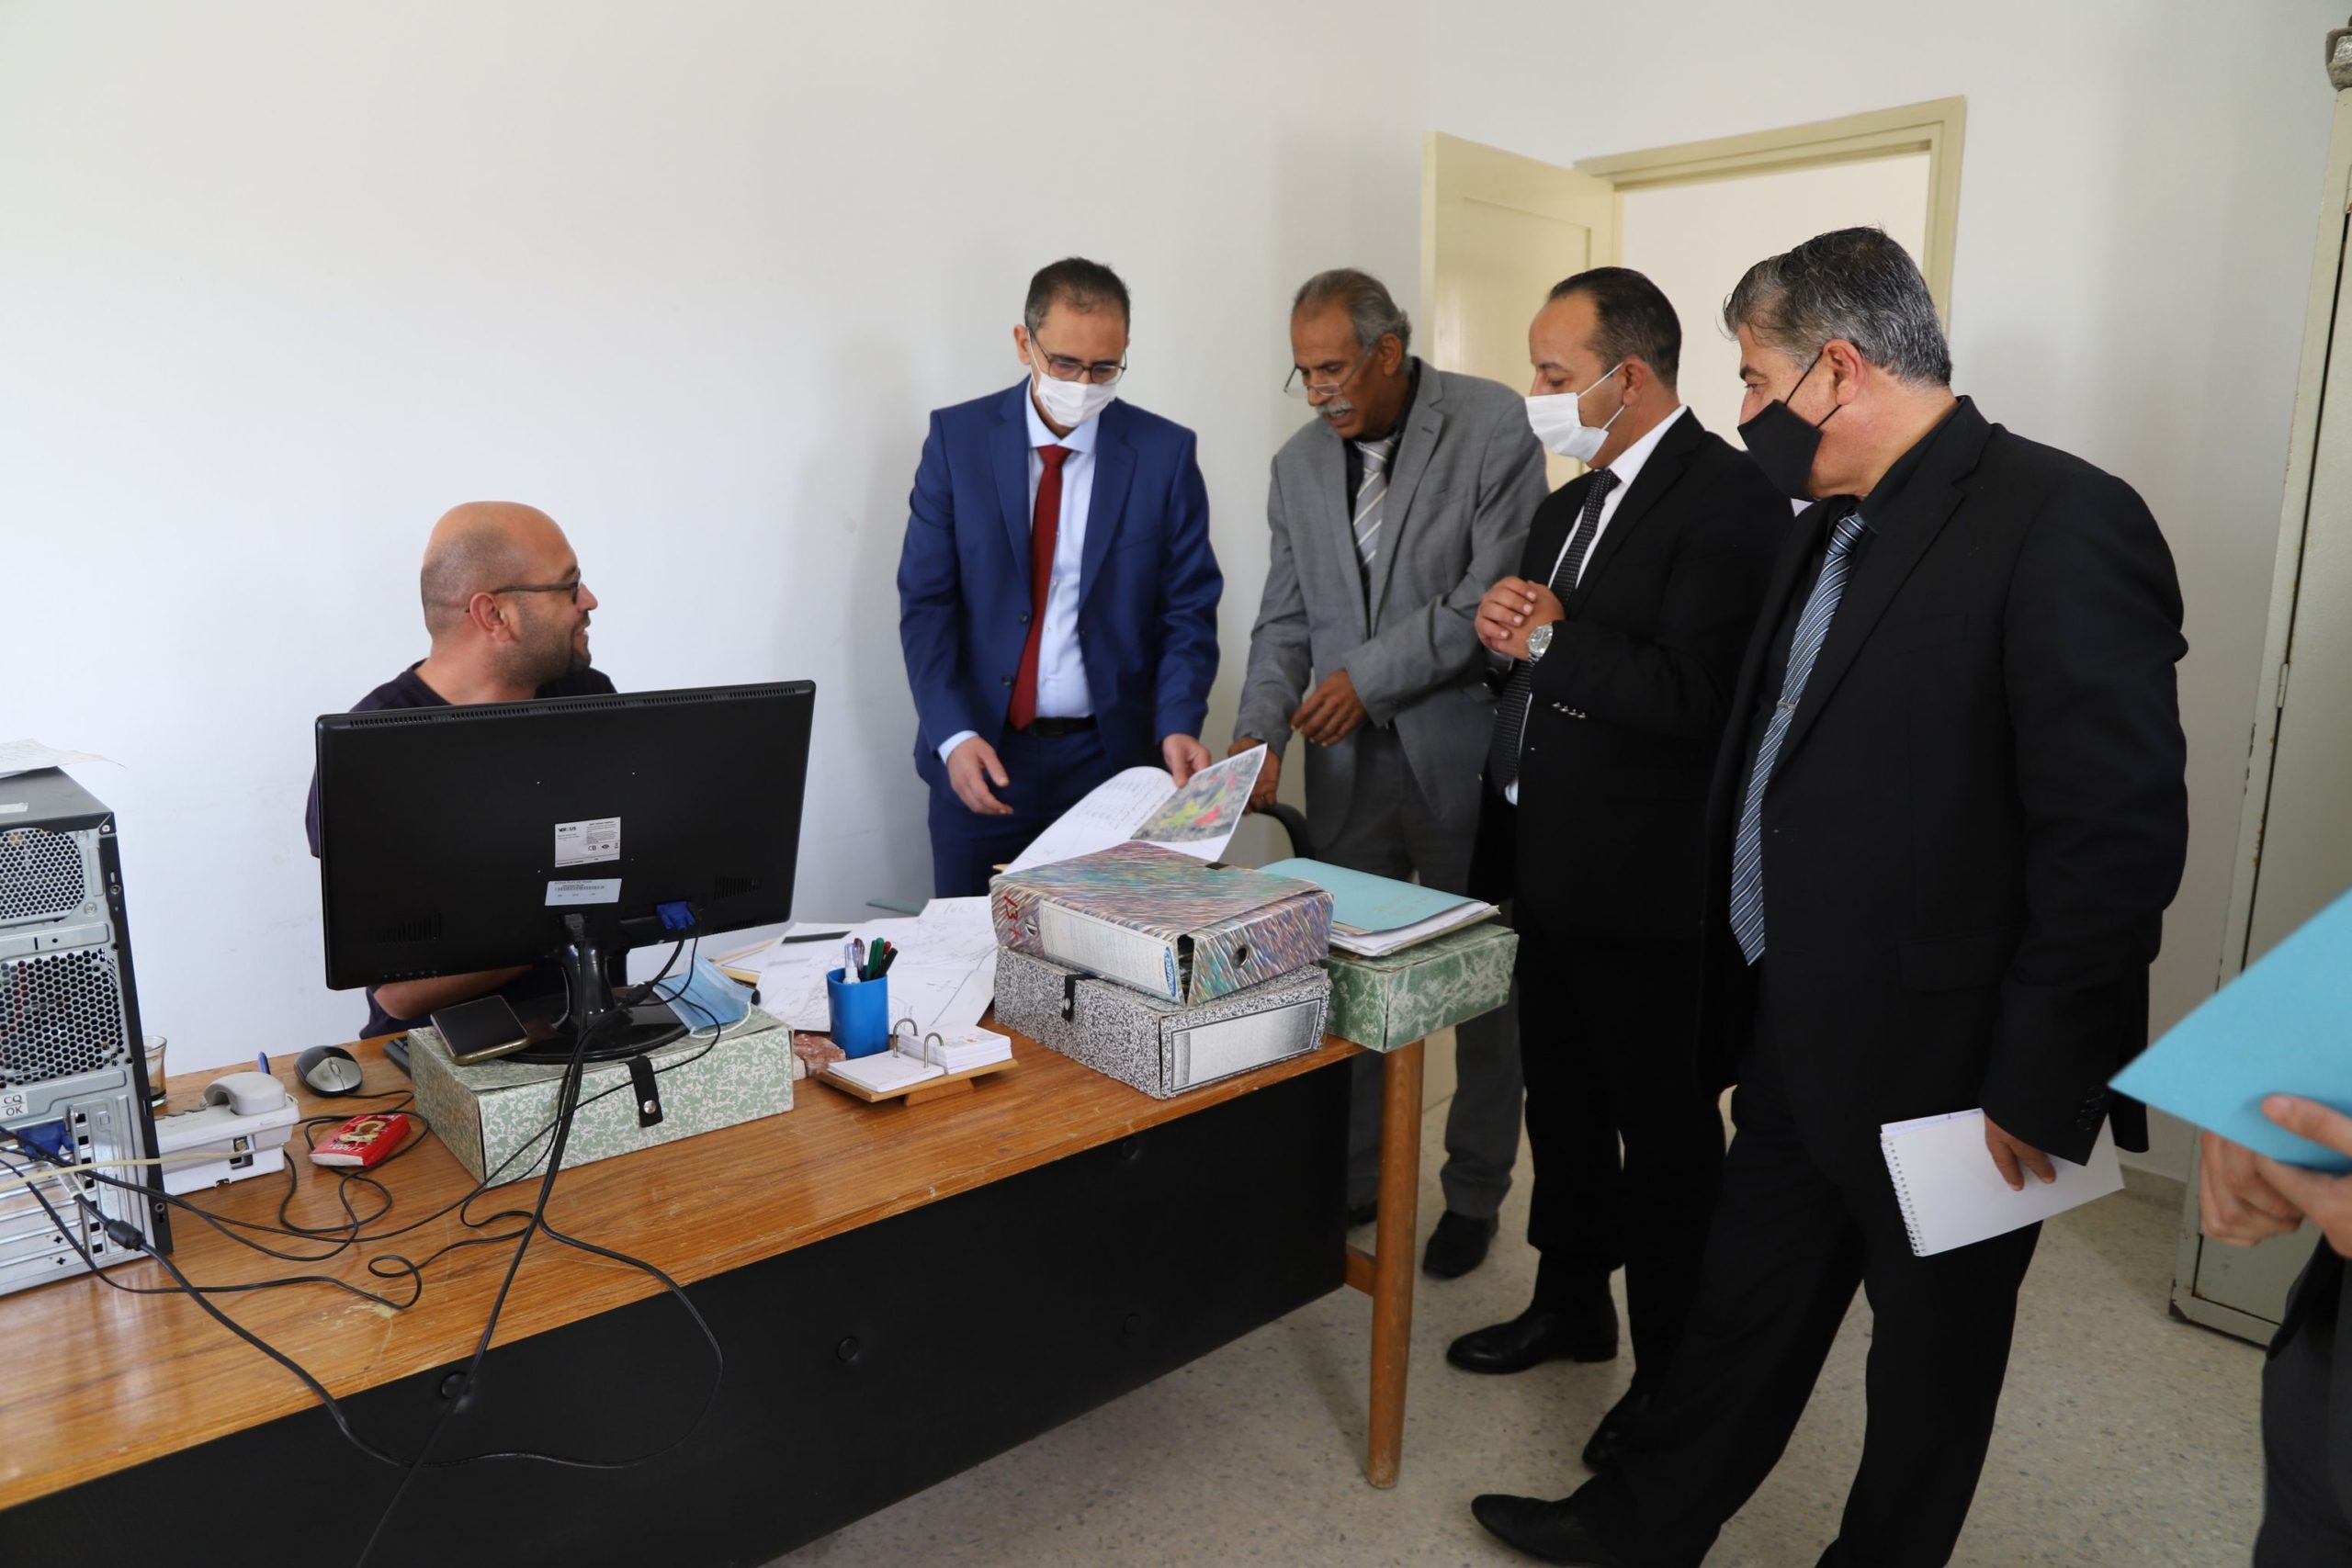 Le ministre Mohamed Rekik recommande l’intensification des inspections périodiques des biens domaniaux.